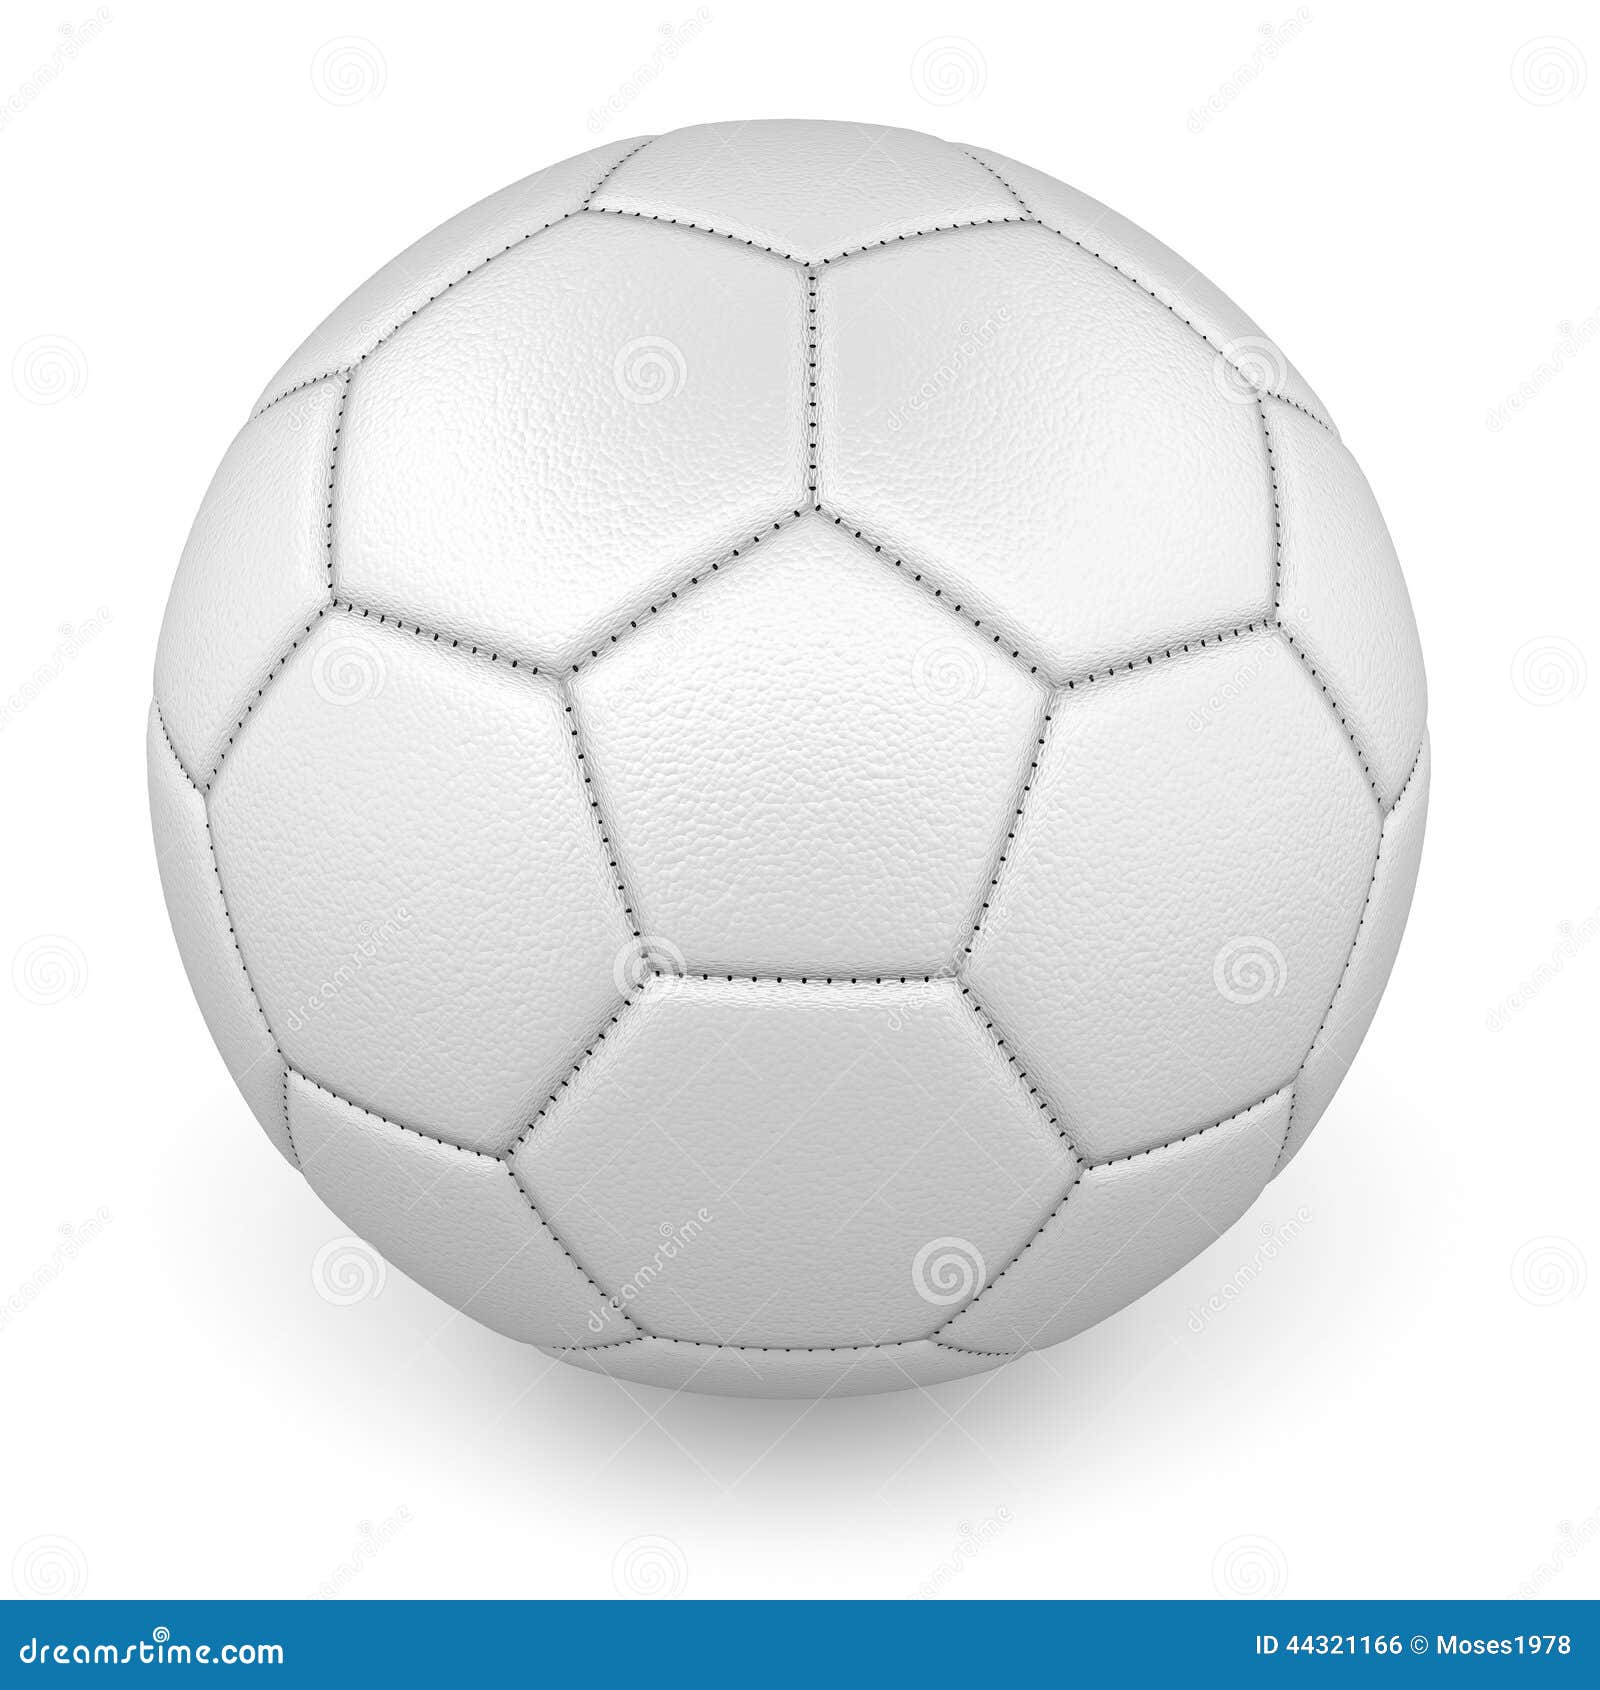 Piłka nożna balowy futbolowy żądany sport. Textured białej skóry futbolu piłka